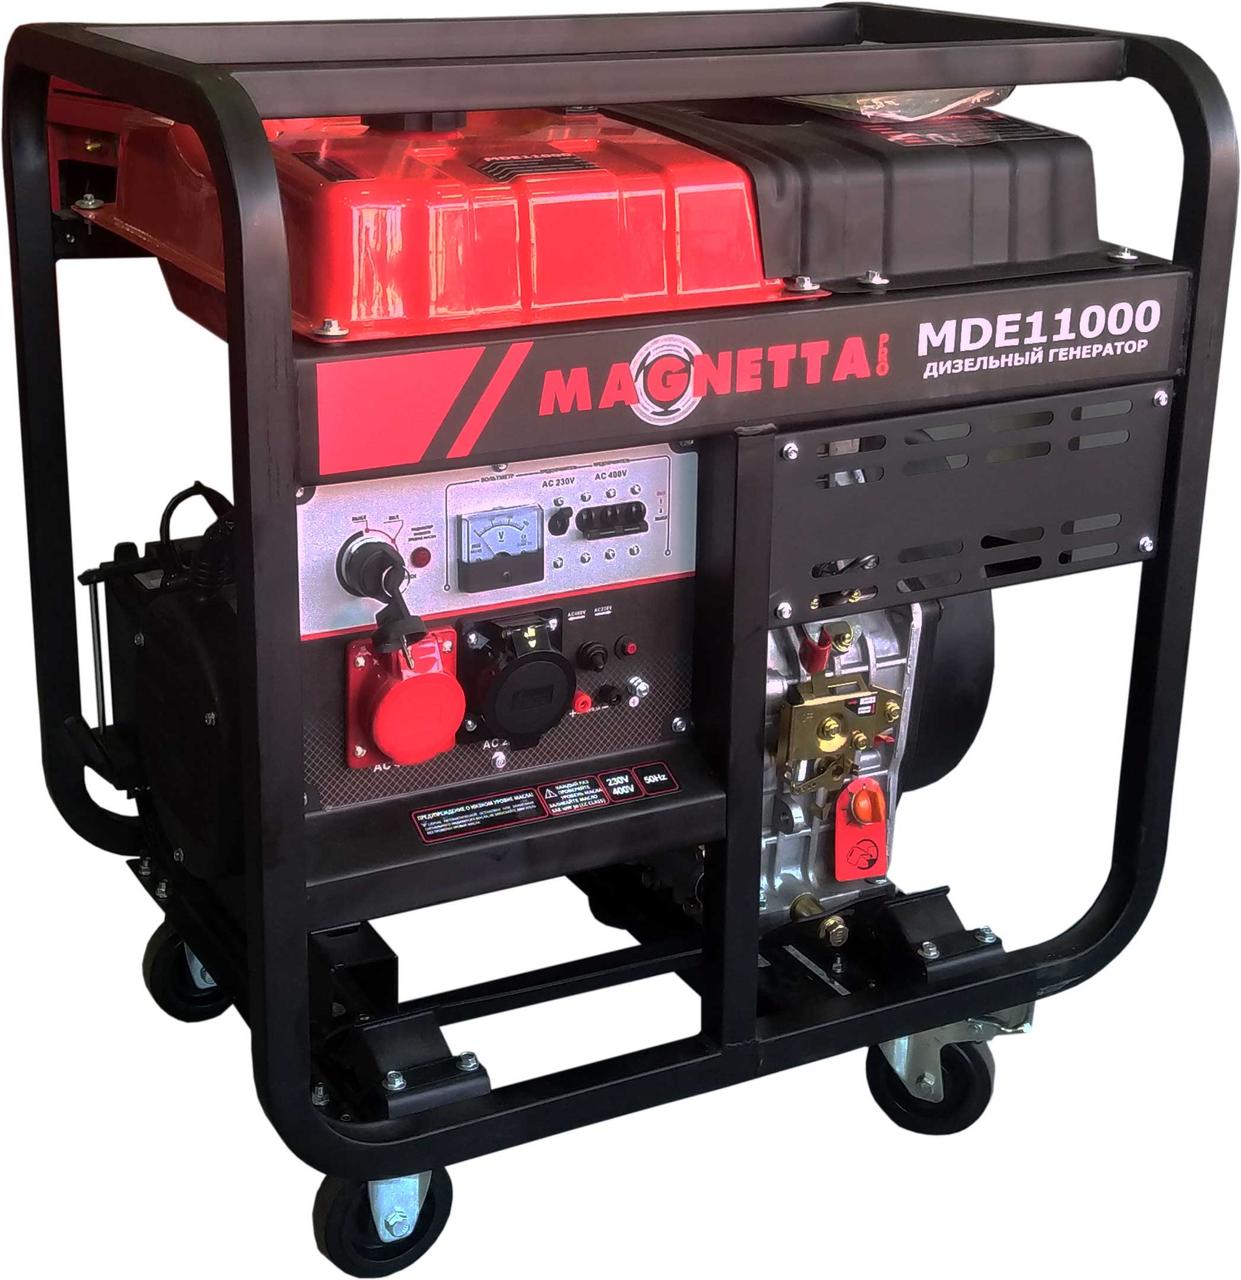 Magnetta, MDE11000, Дизельный генератор 8 кВт, 220 / 230 В